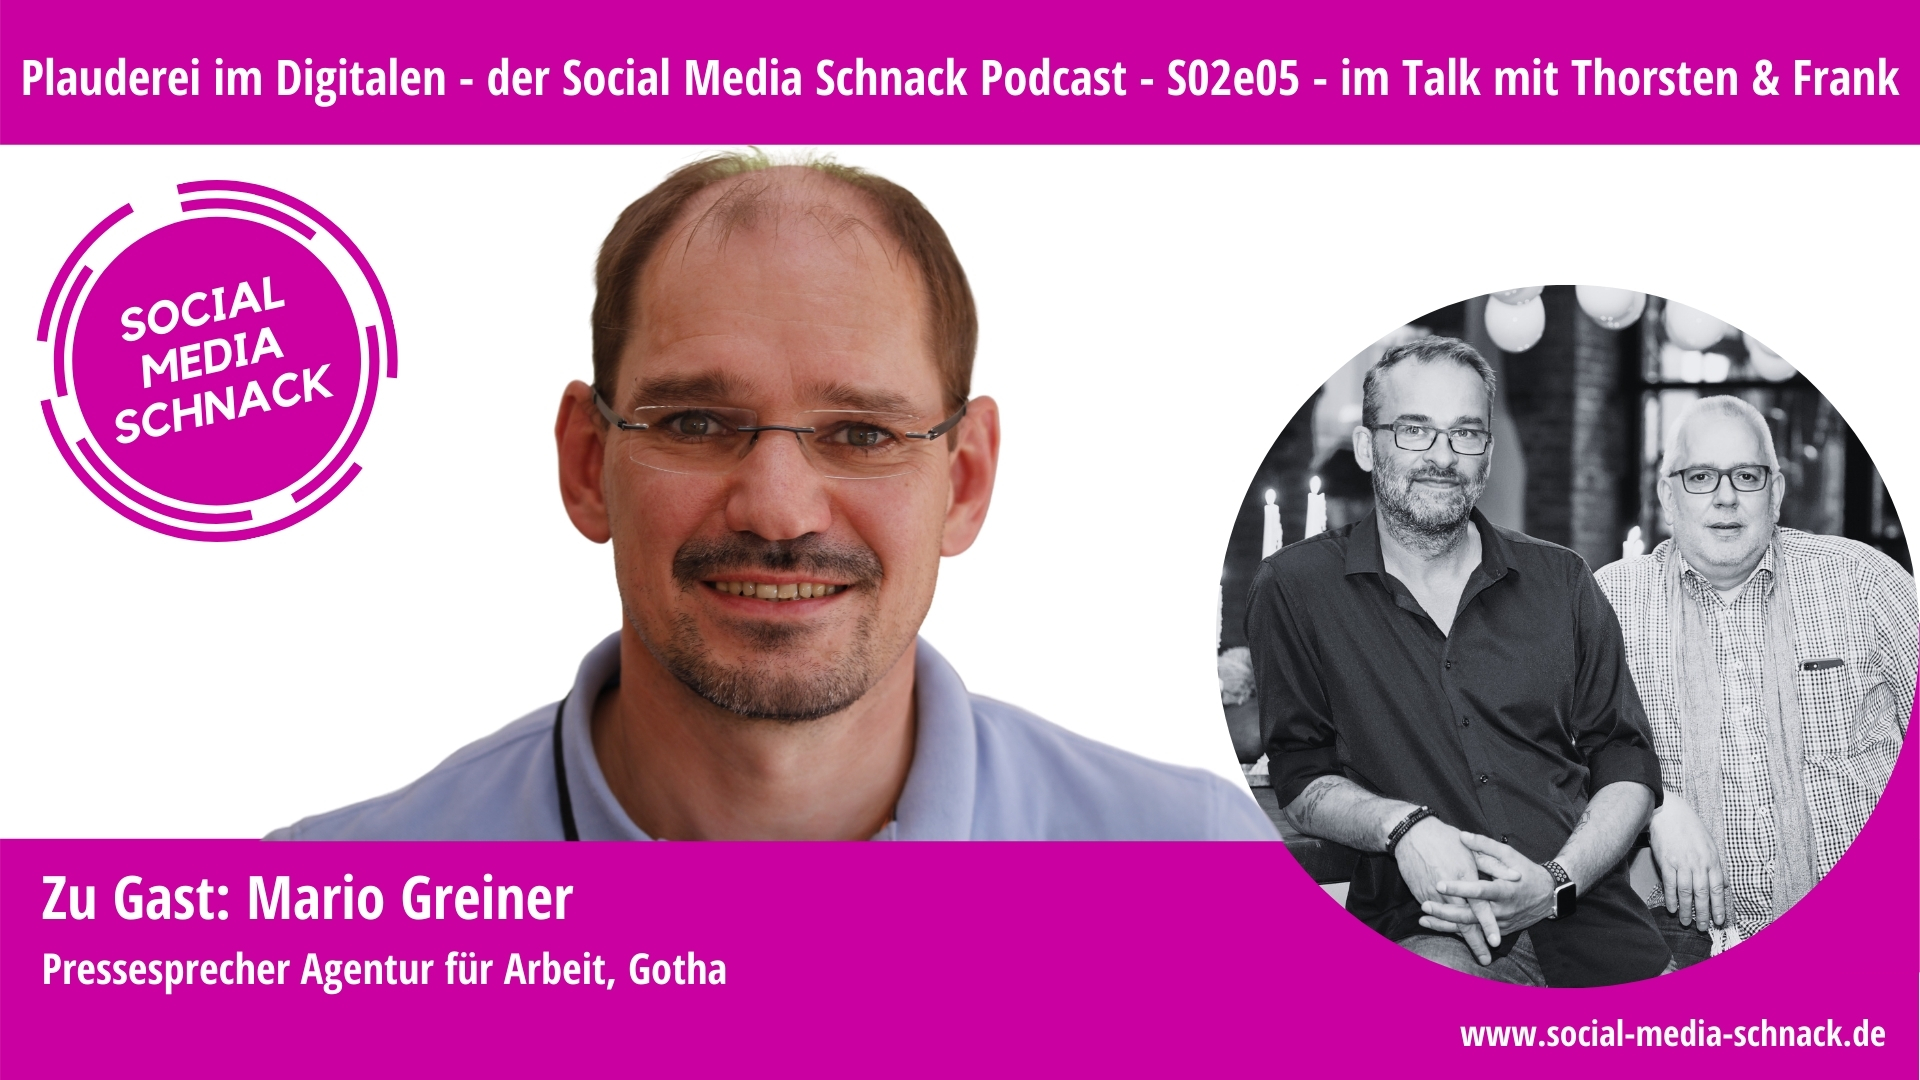 Social Media Schnack – S02e05 – Zu Gast: Mario Greiner, Pressesprecher Agentur für Arbeit, Gotha